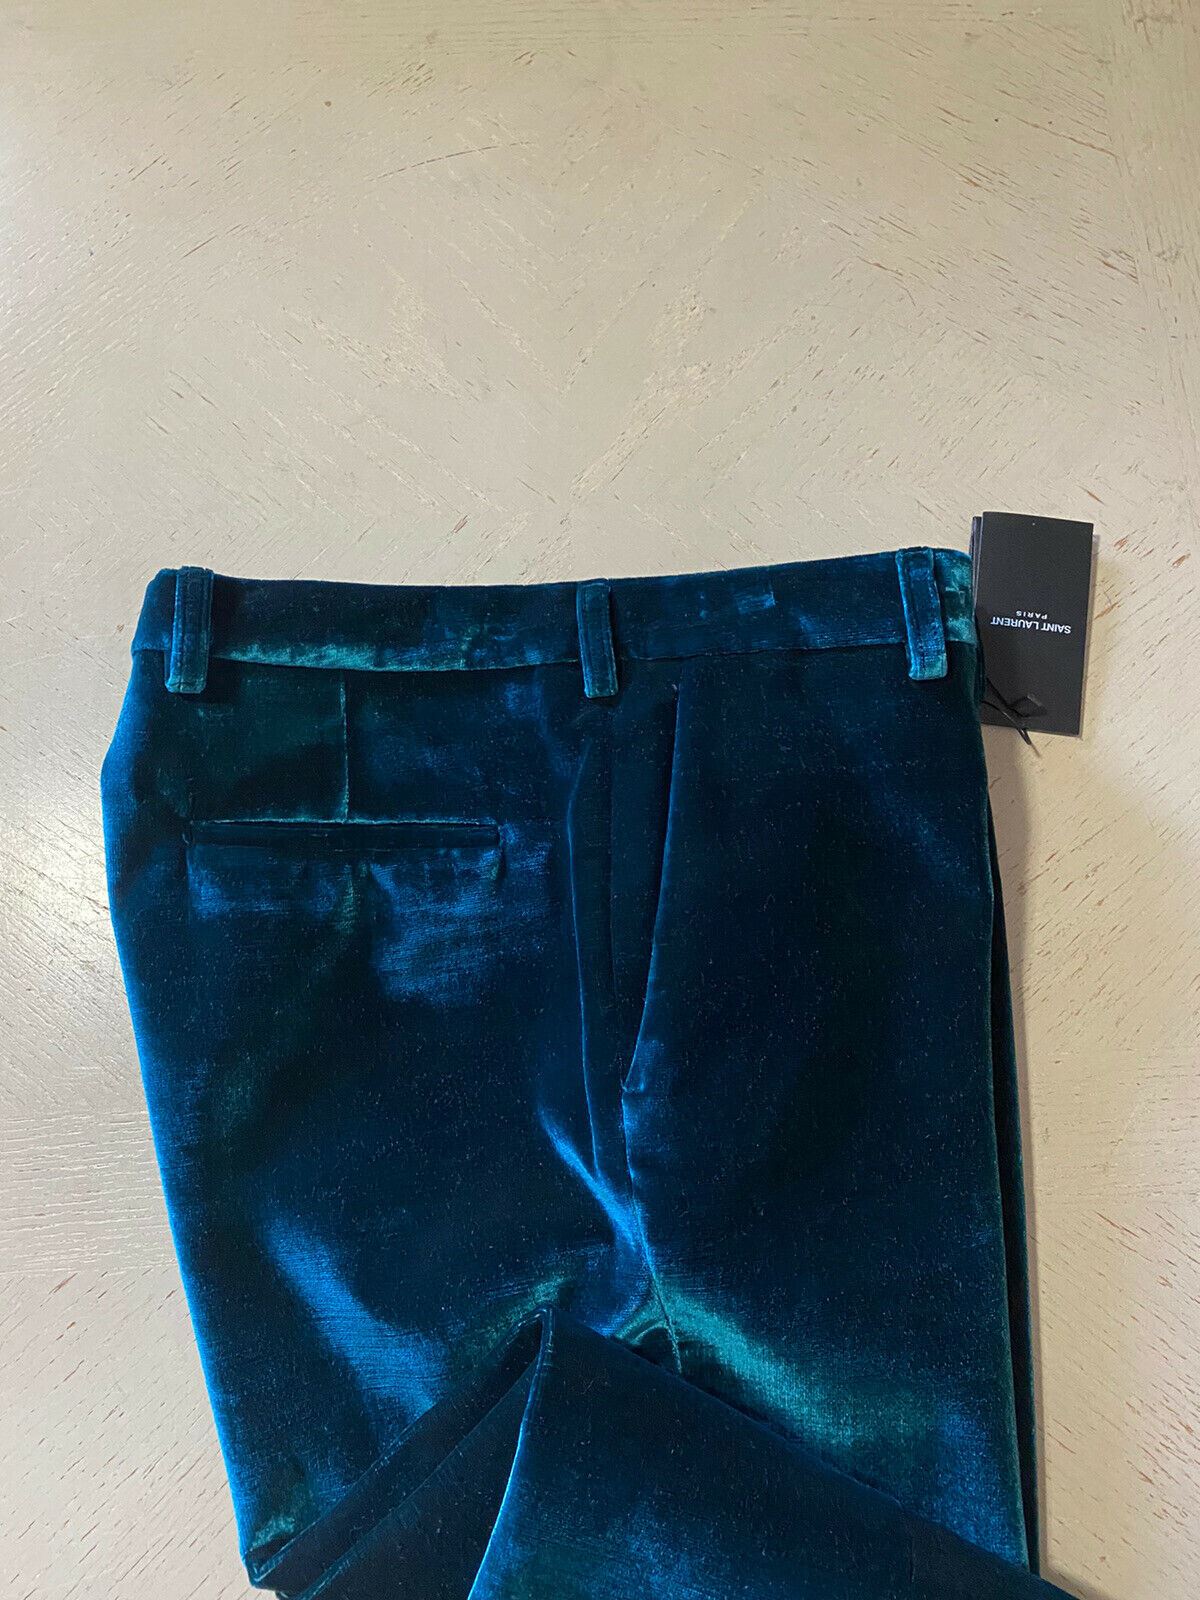 NWT $1290 Saint Laurent Men’s Dress Pants Green 34 US ( 50 Eu ) Italy